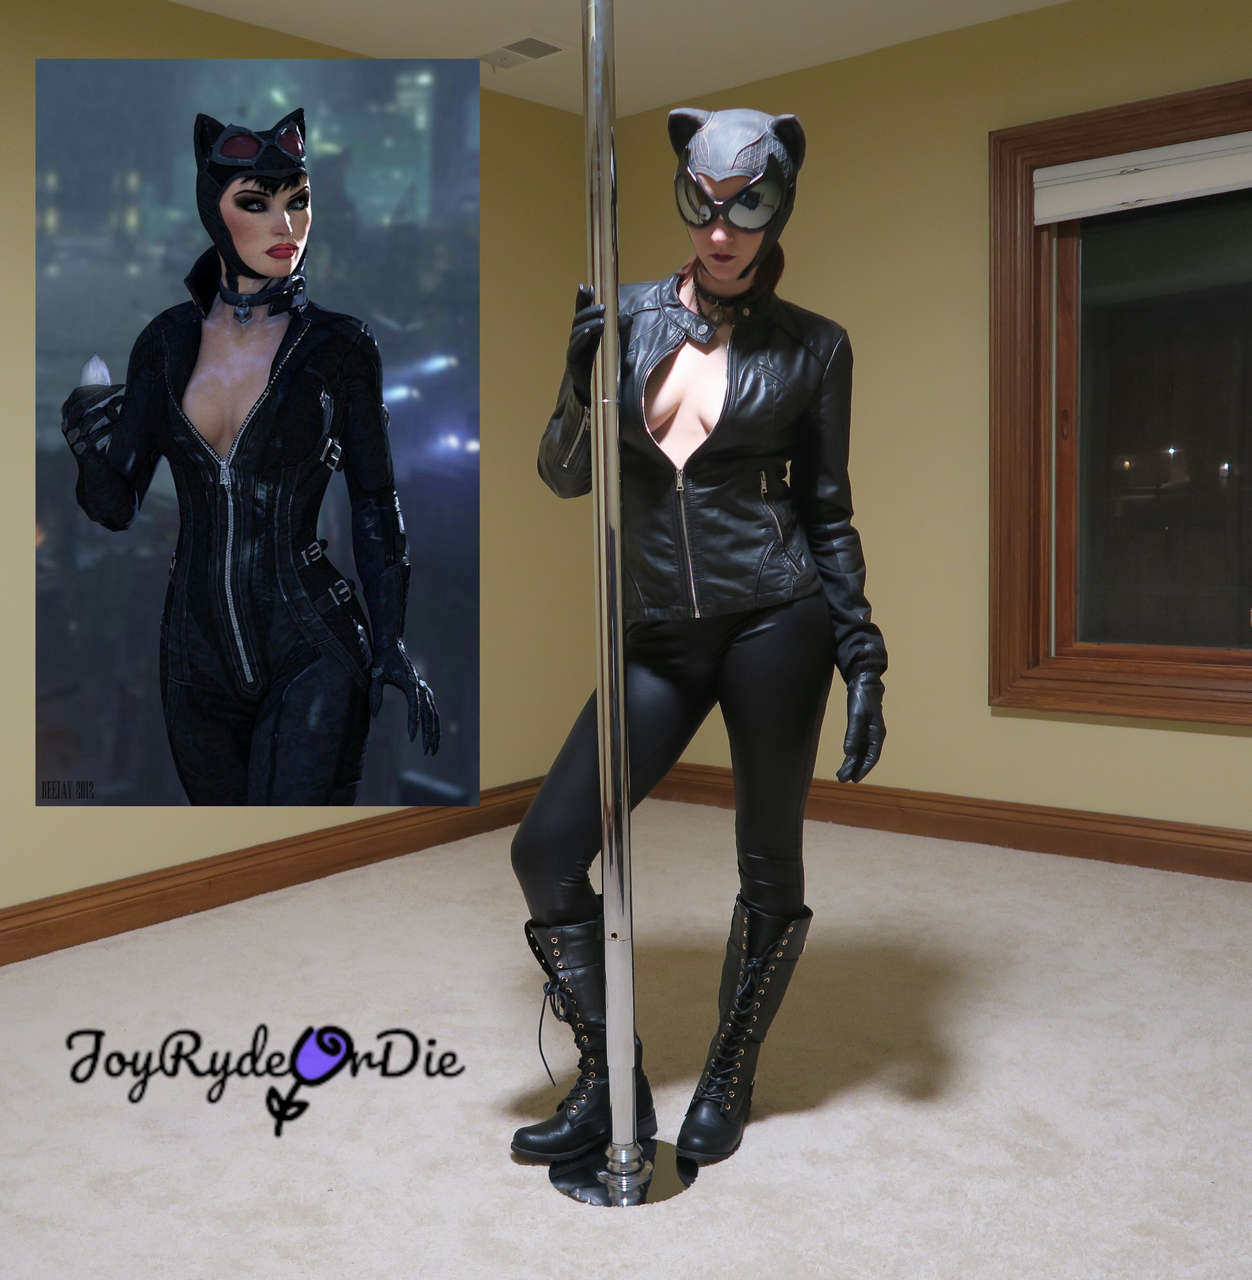 Joyrydeordie As Catwoman F Oc 0